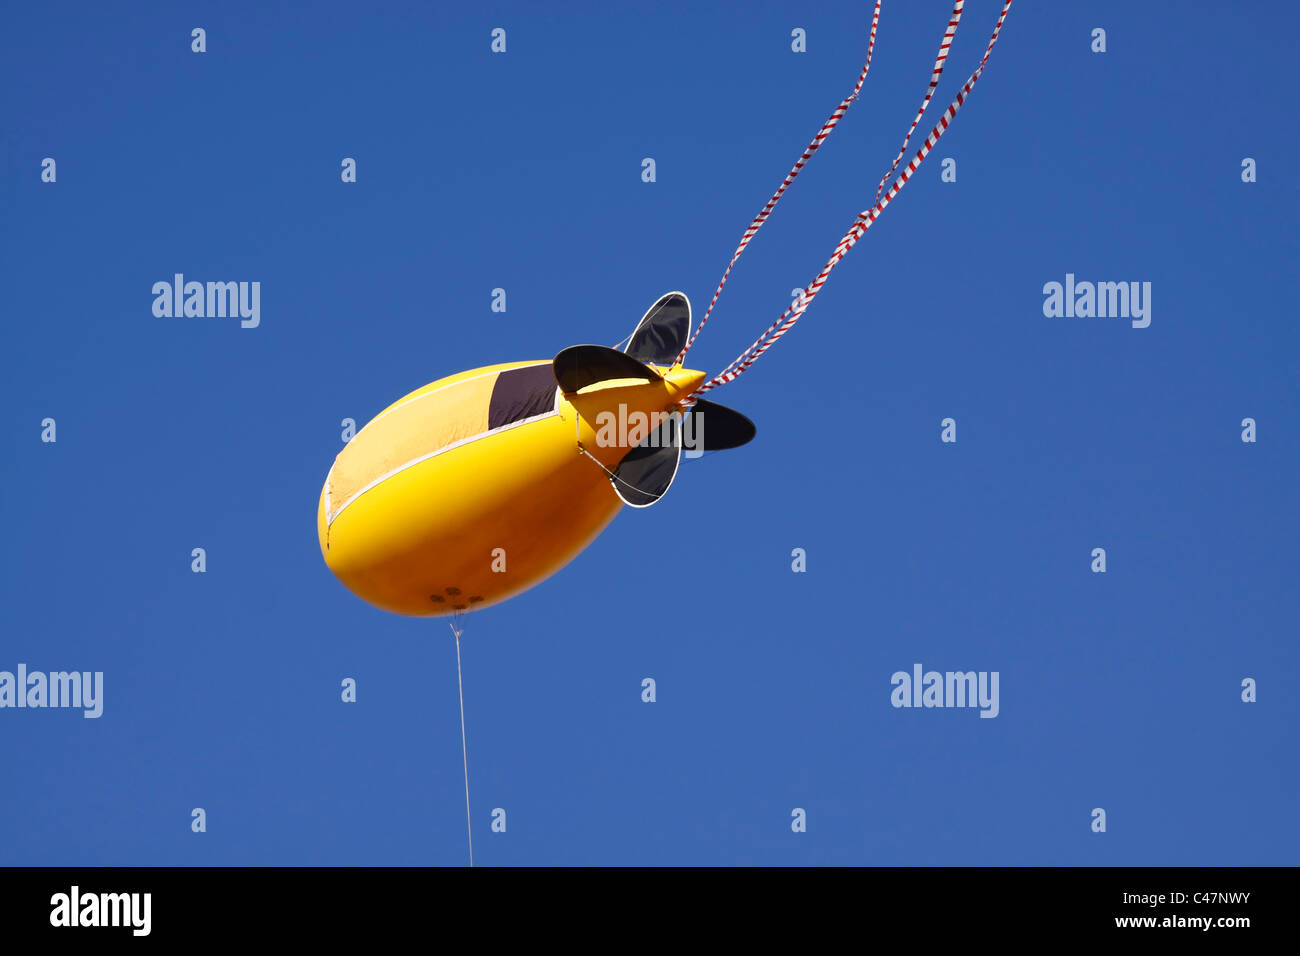 Un blimp publicidad amarillo y negro o globo amarrado, aislado contra un cielo sin nubes. Foto de stock